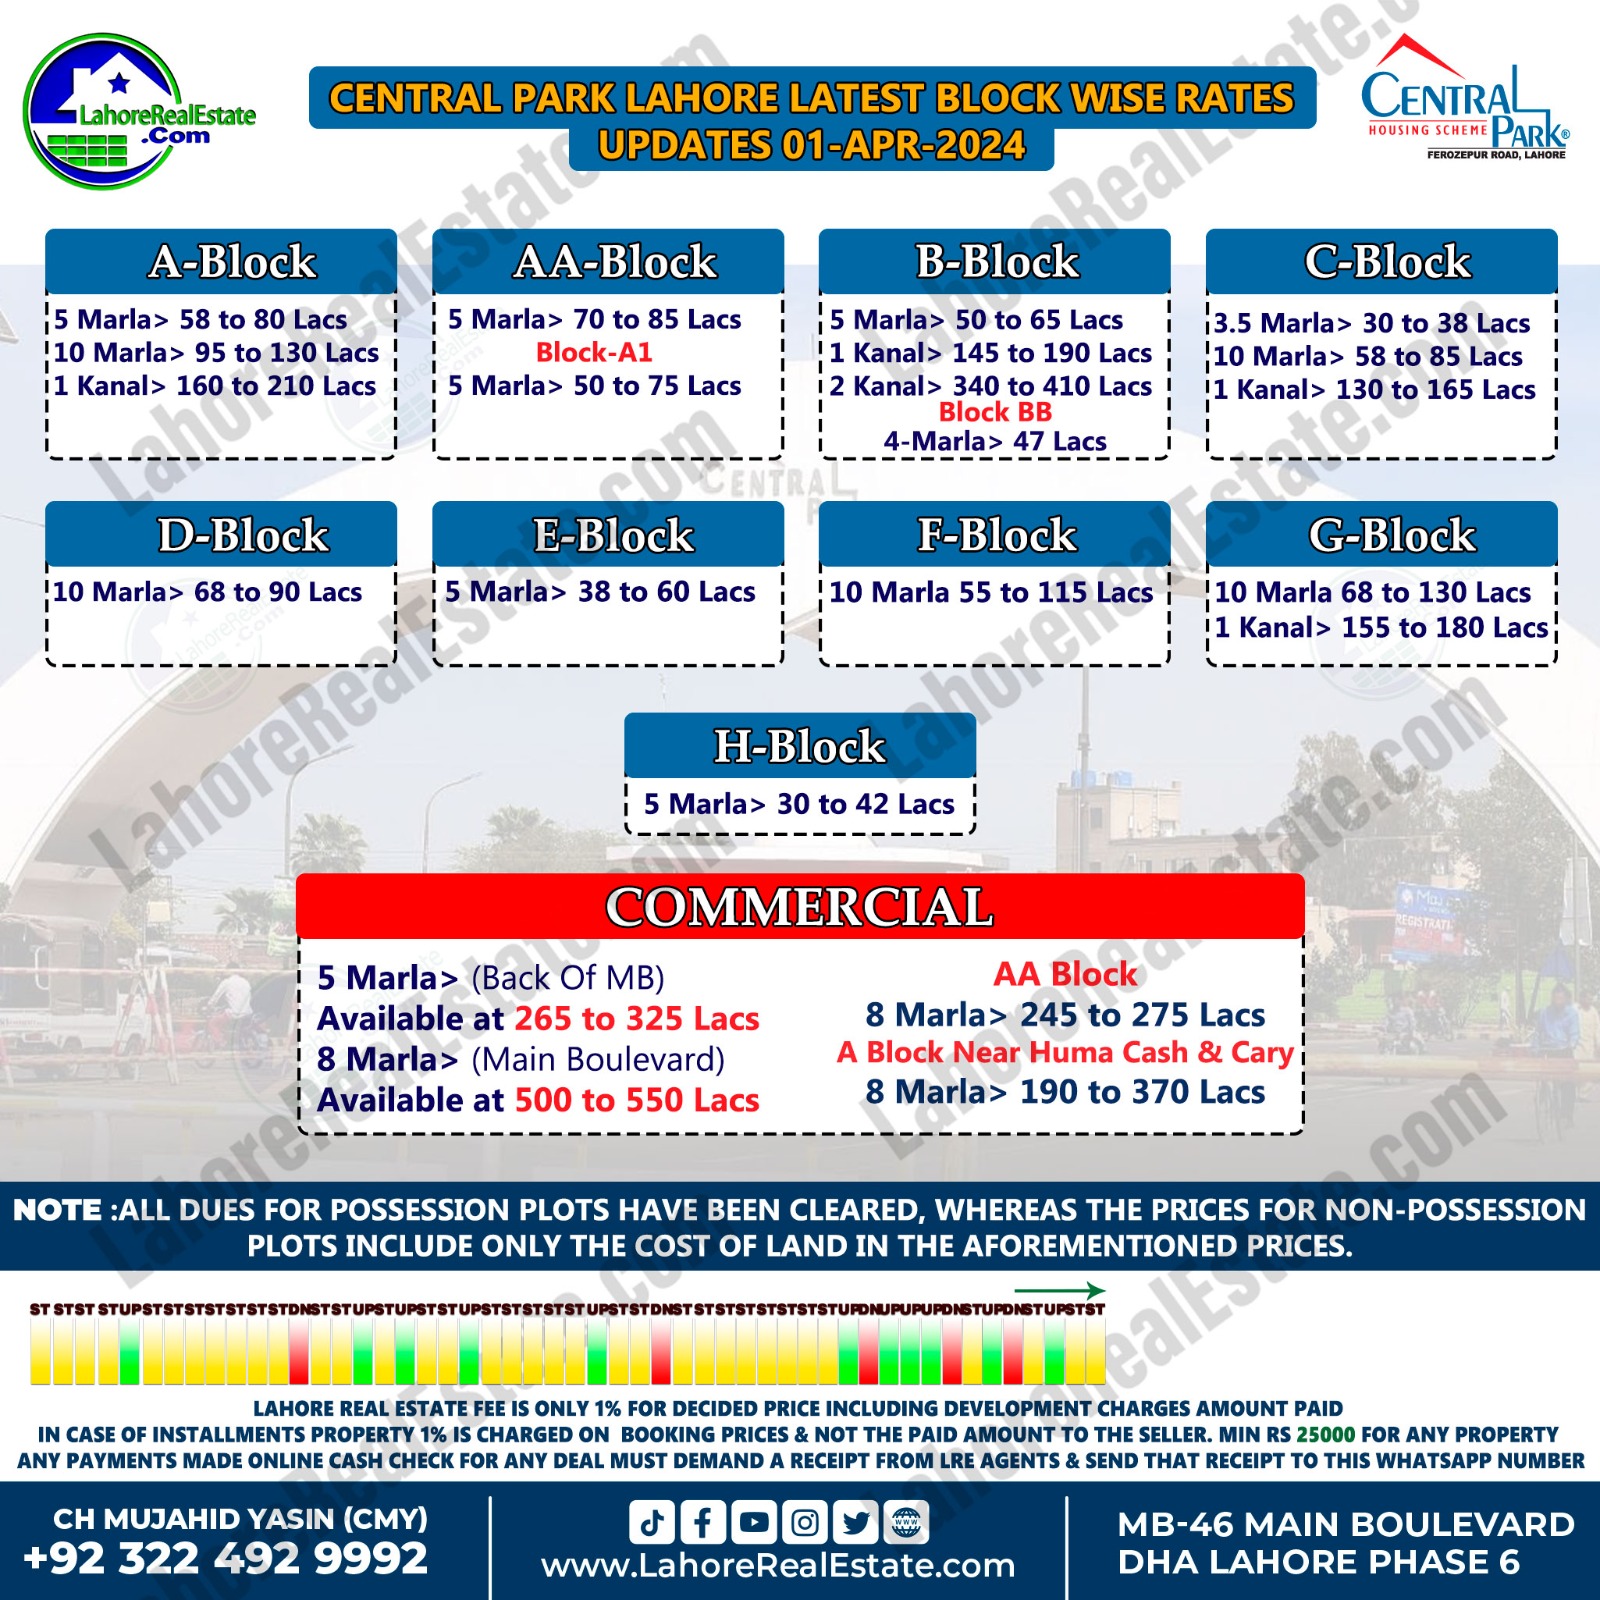 Central Park Lahore Plot Prices Update April 04, 2024